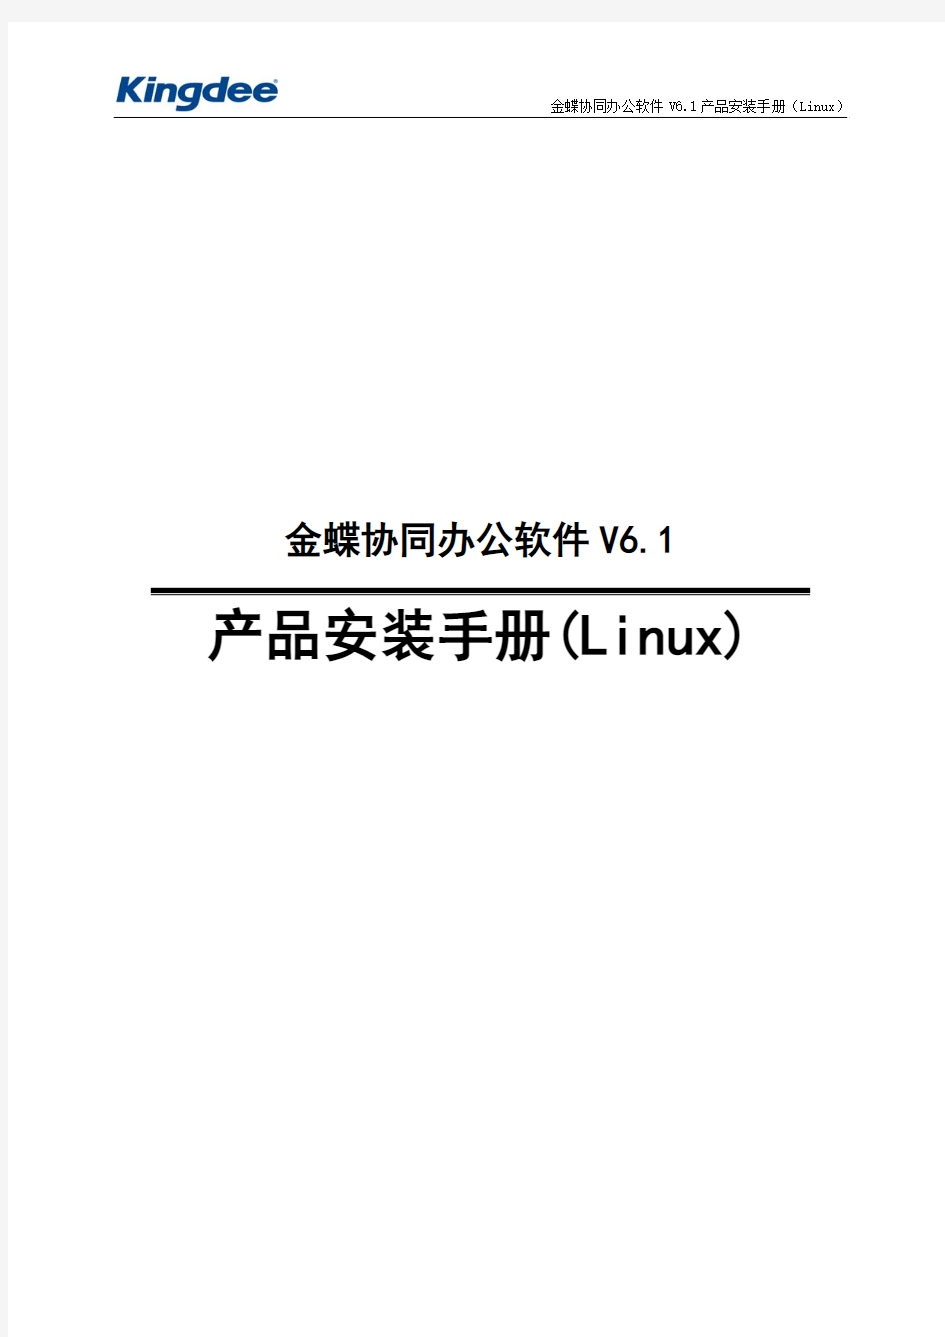 金蝶协同办公软件V6.1产品安装手册(Linux)